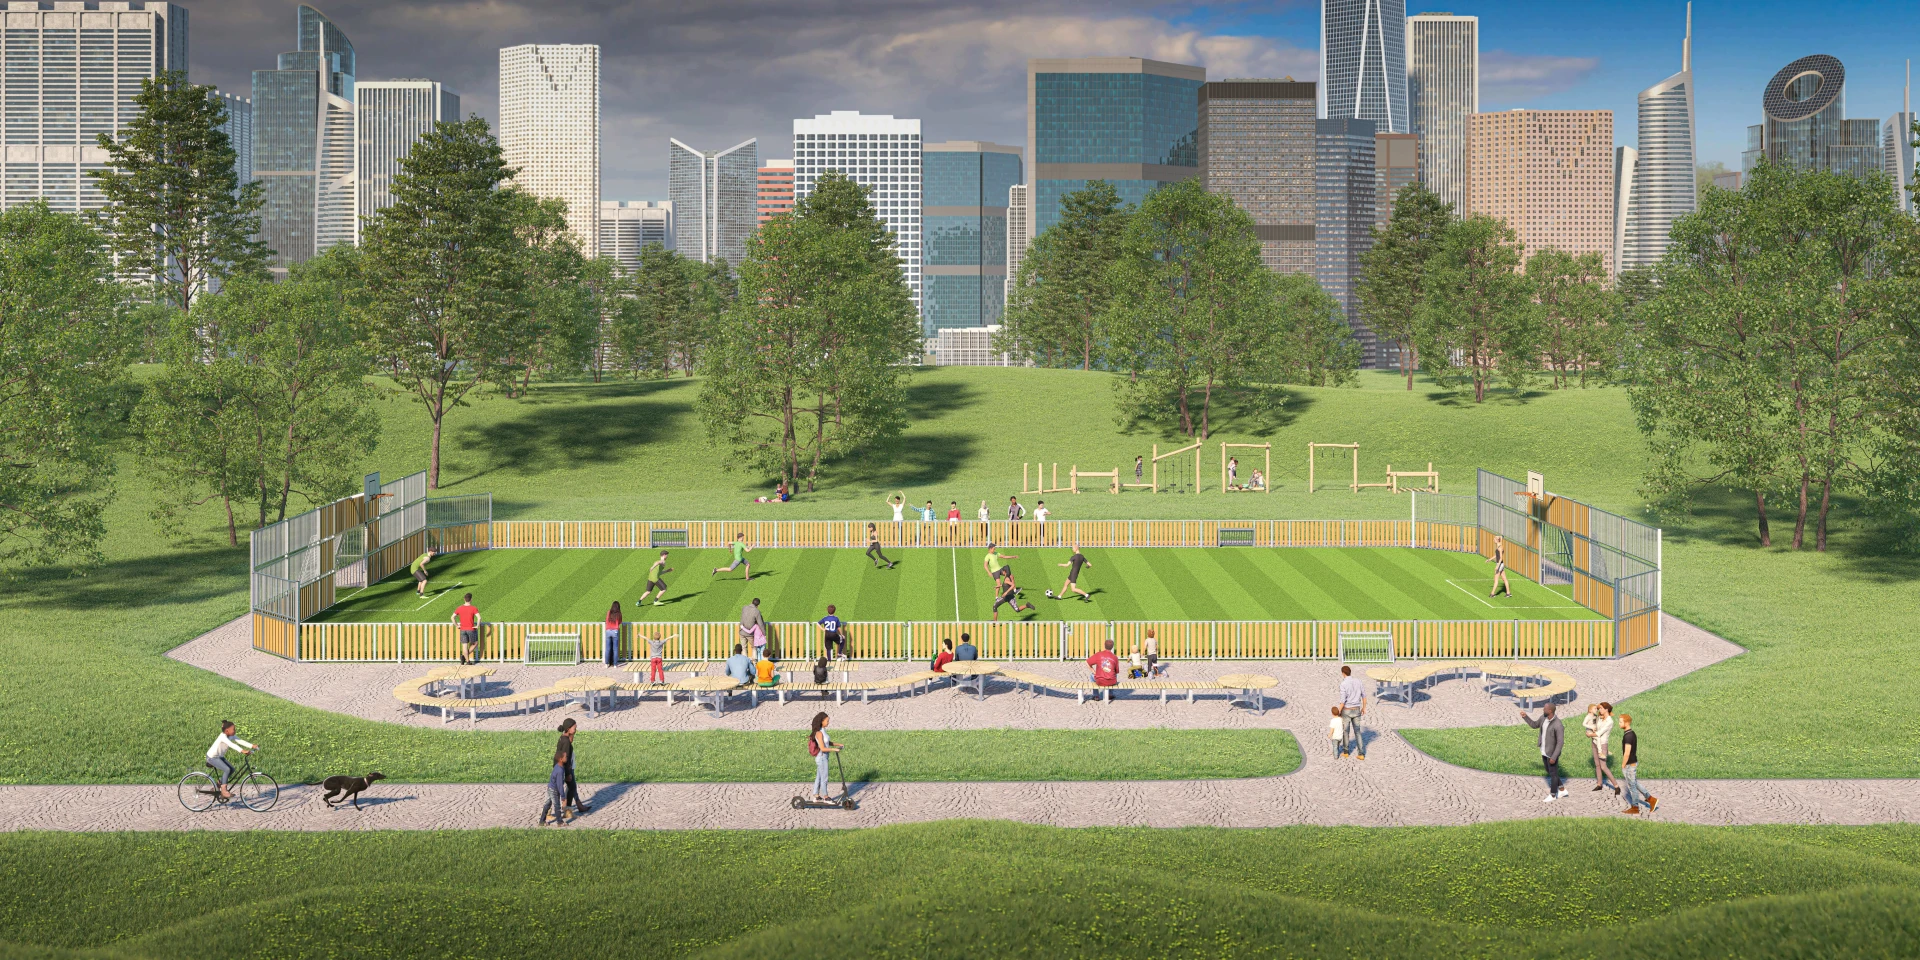 Idé til design af en multisportbane i en park